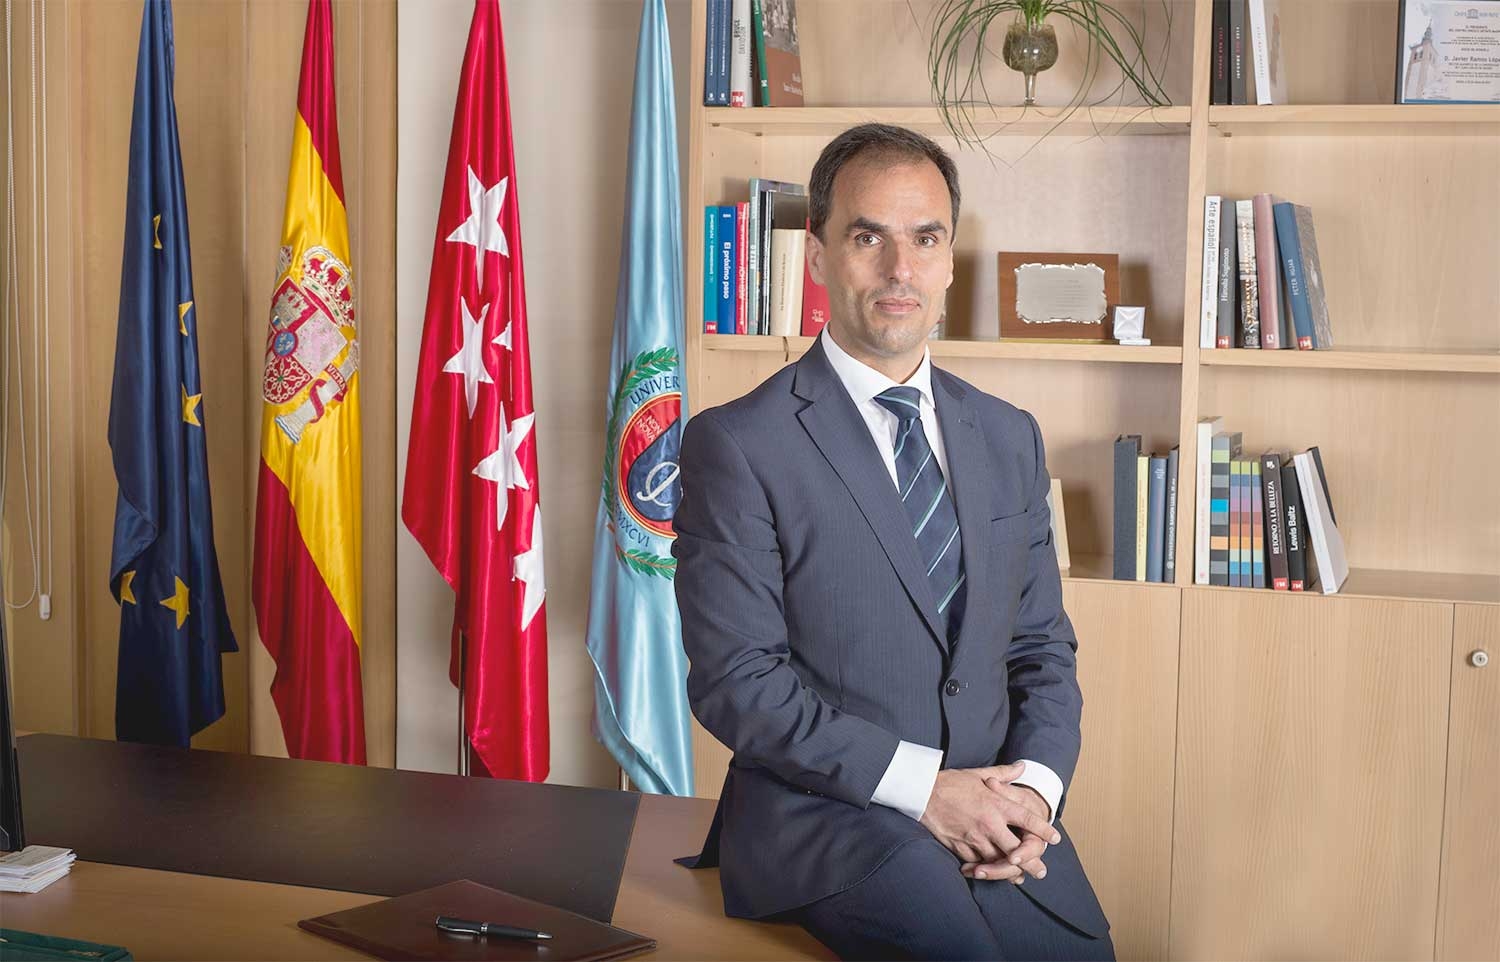 La Universidad Rey Juan Carlos, que tiene como rector a Javier Ramos, está dispuesta a gastar 6.361 euros al mes para disponer de un servicio de vehículo con conductor